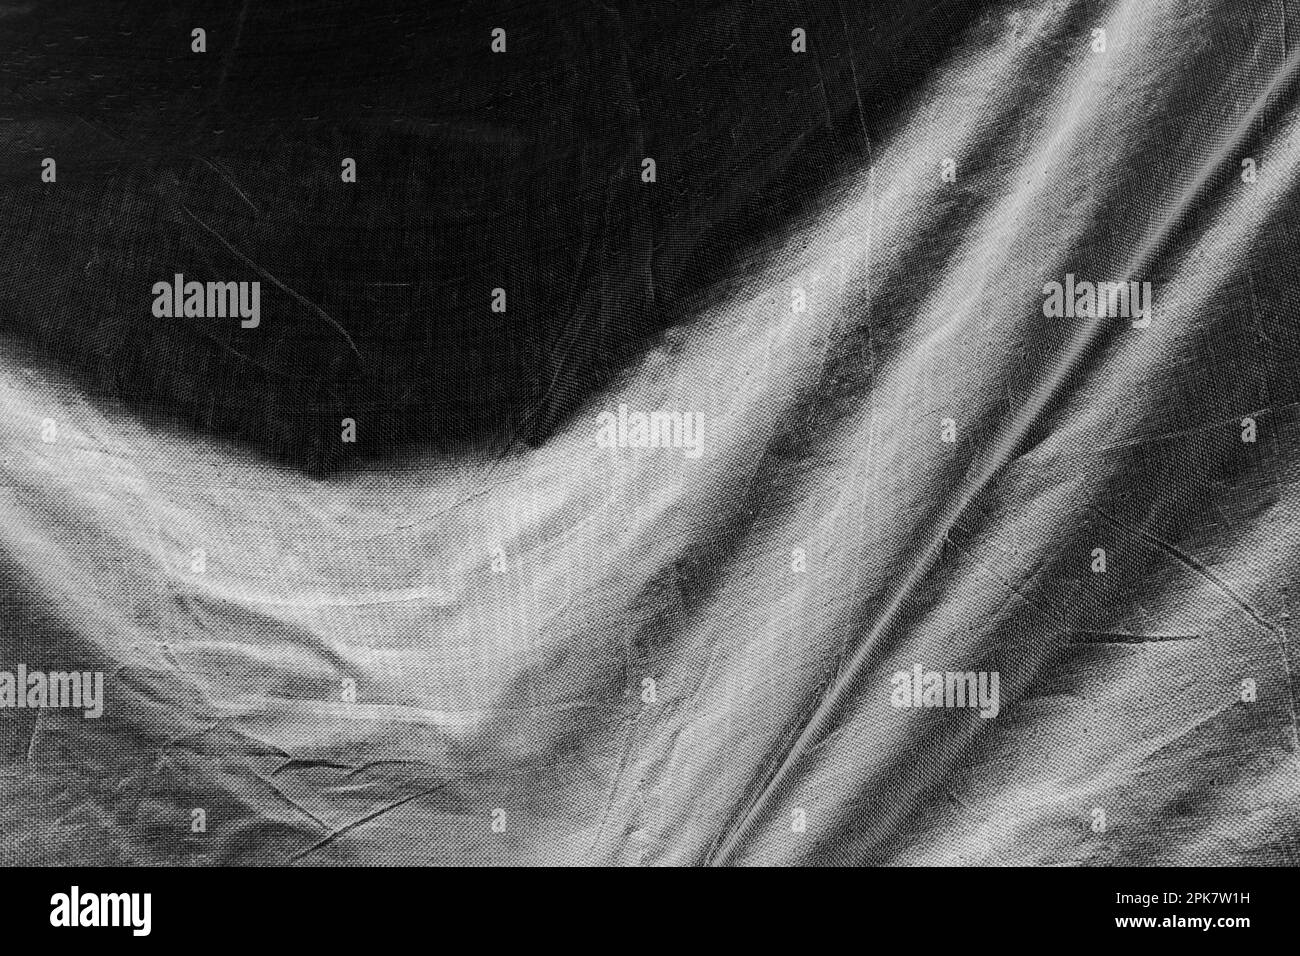 Image en noir et blanc, plis de bâche drapés sur les objets. Banque D'Images